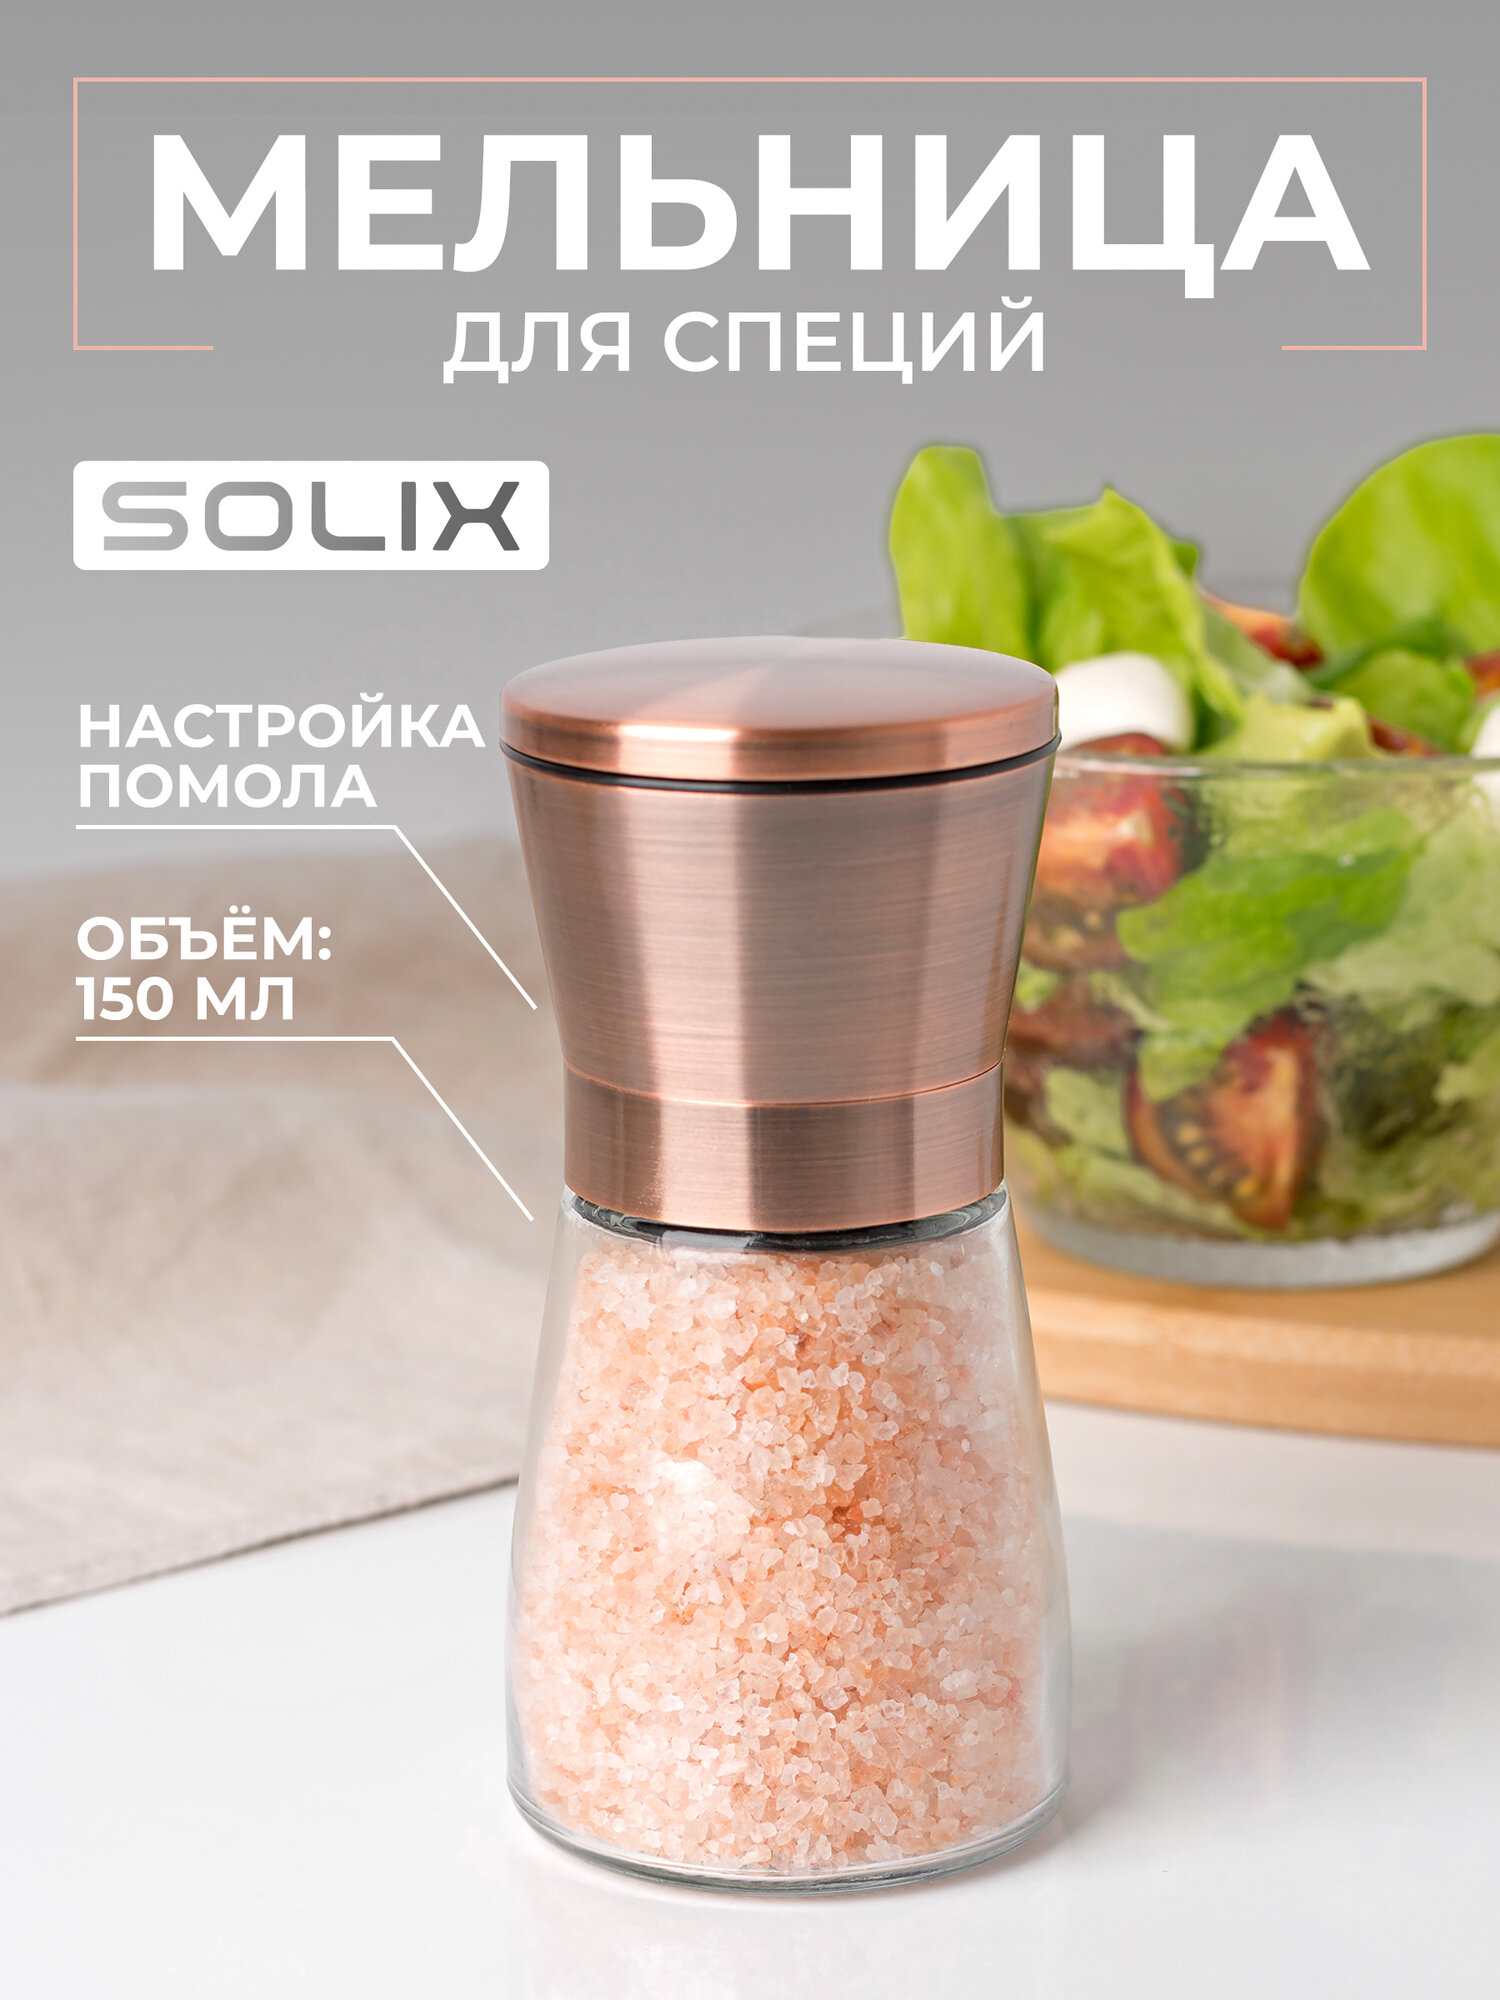 Механическая мельница для специй, перца и соли SOLIX, 1 штука, объём 150мл Медь/ Ручная мельница для специй